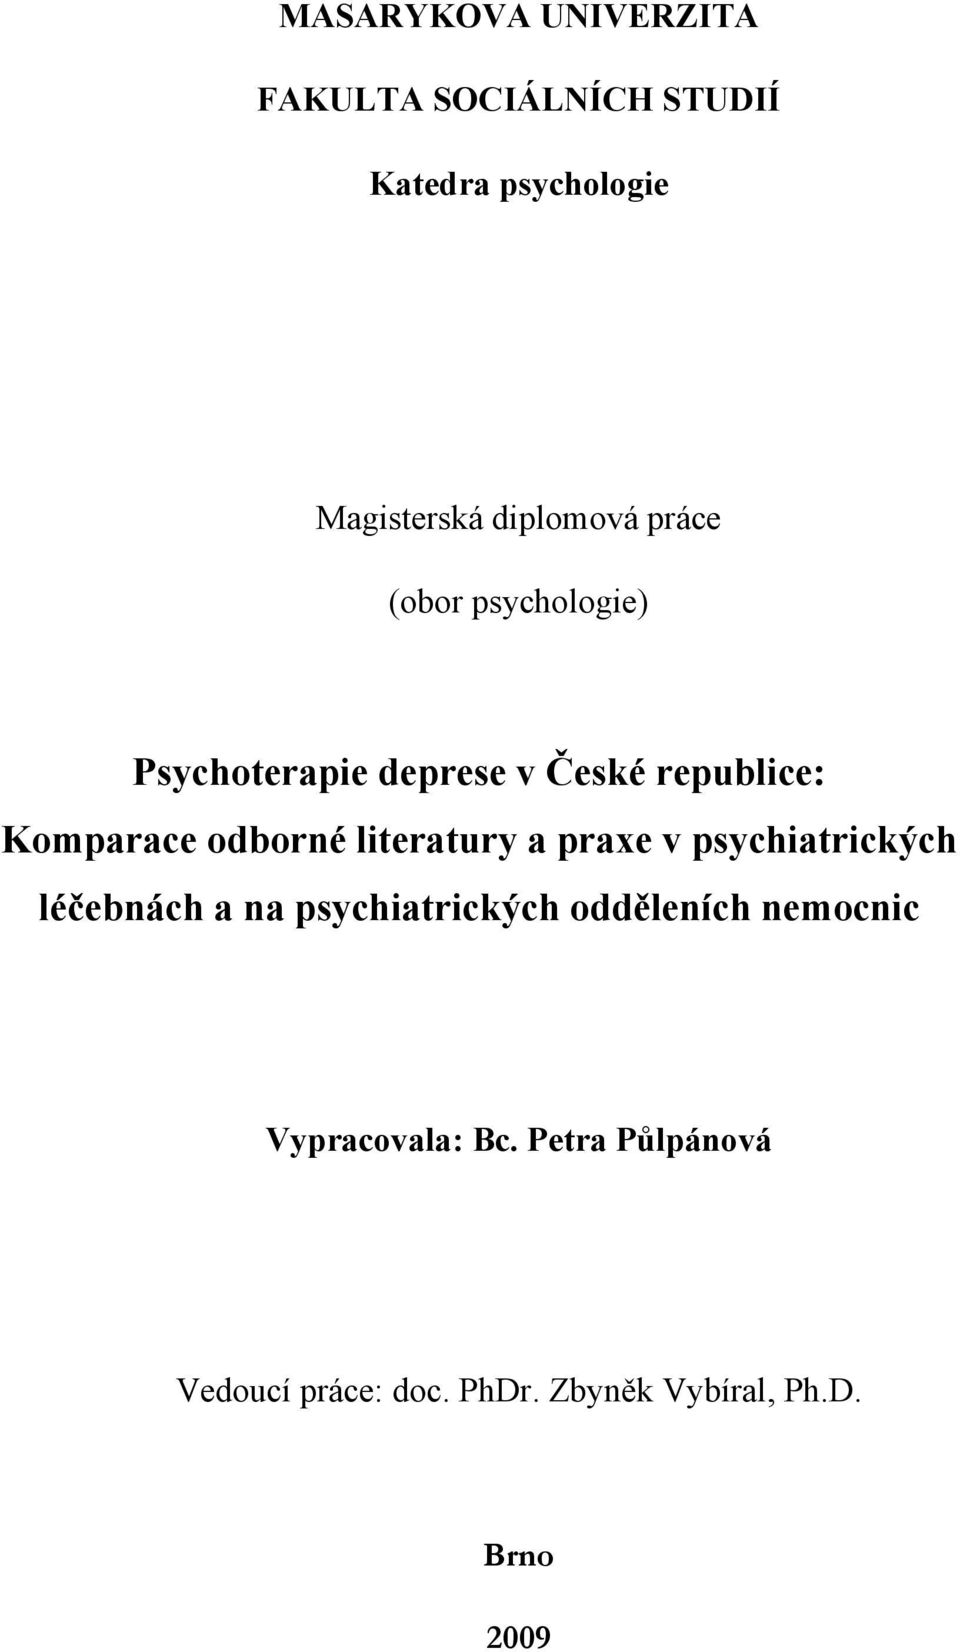 odborné literatury a praxe v psychiatrických léčebnách a na psychiatrických odděleních